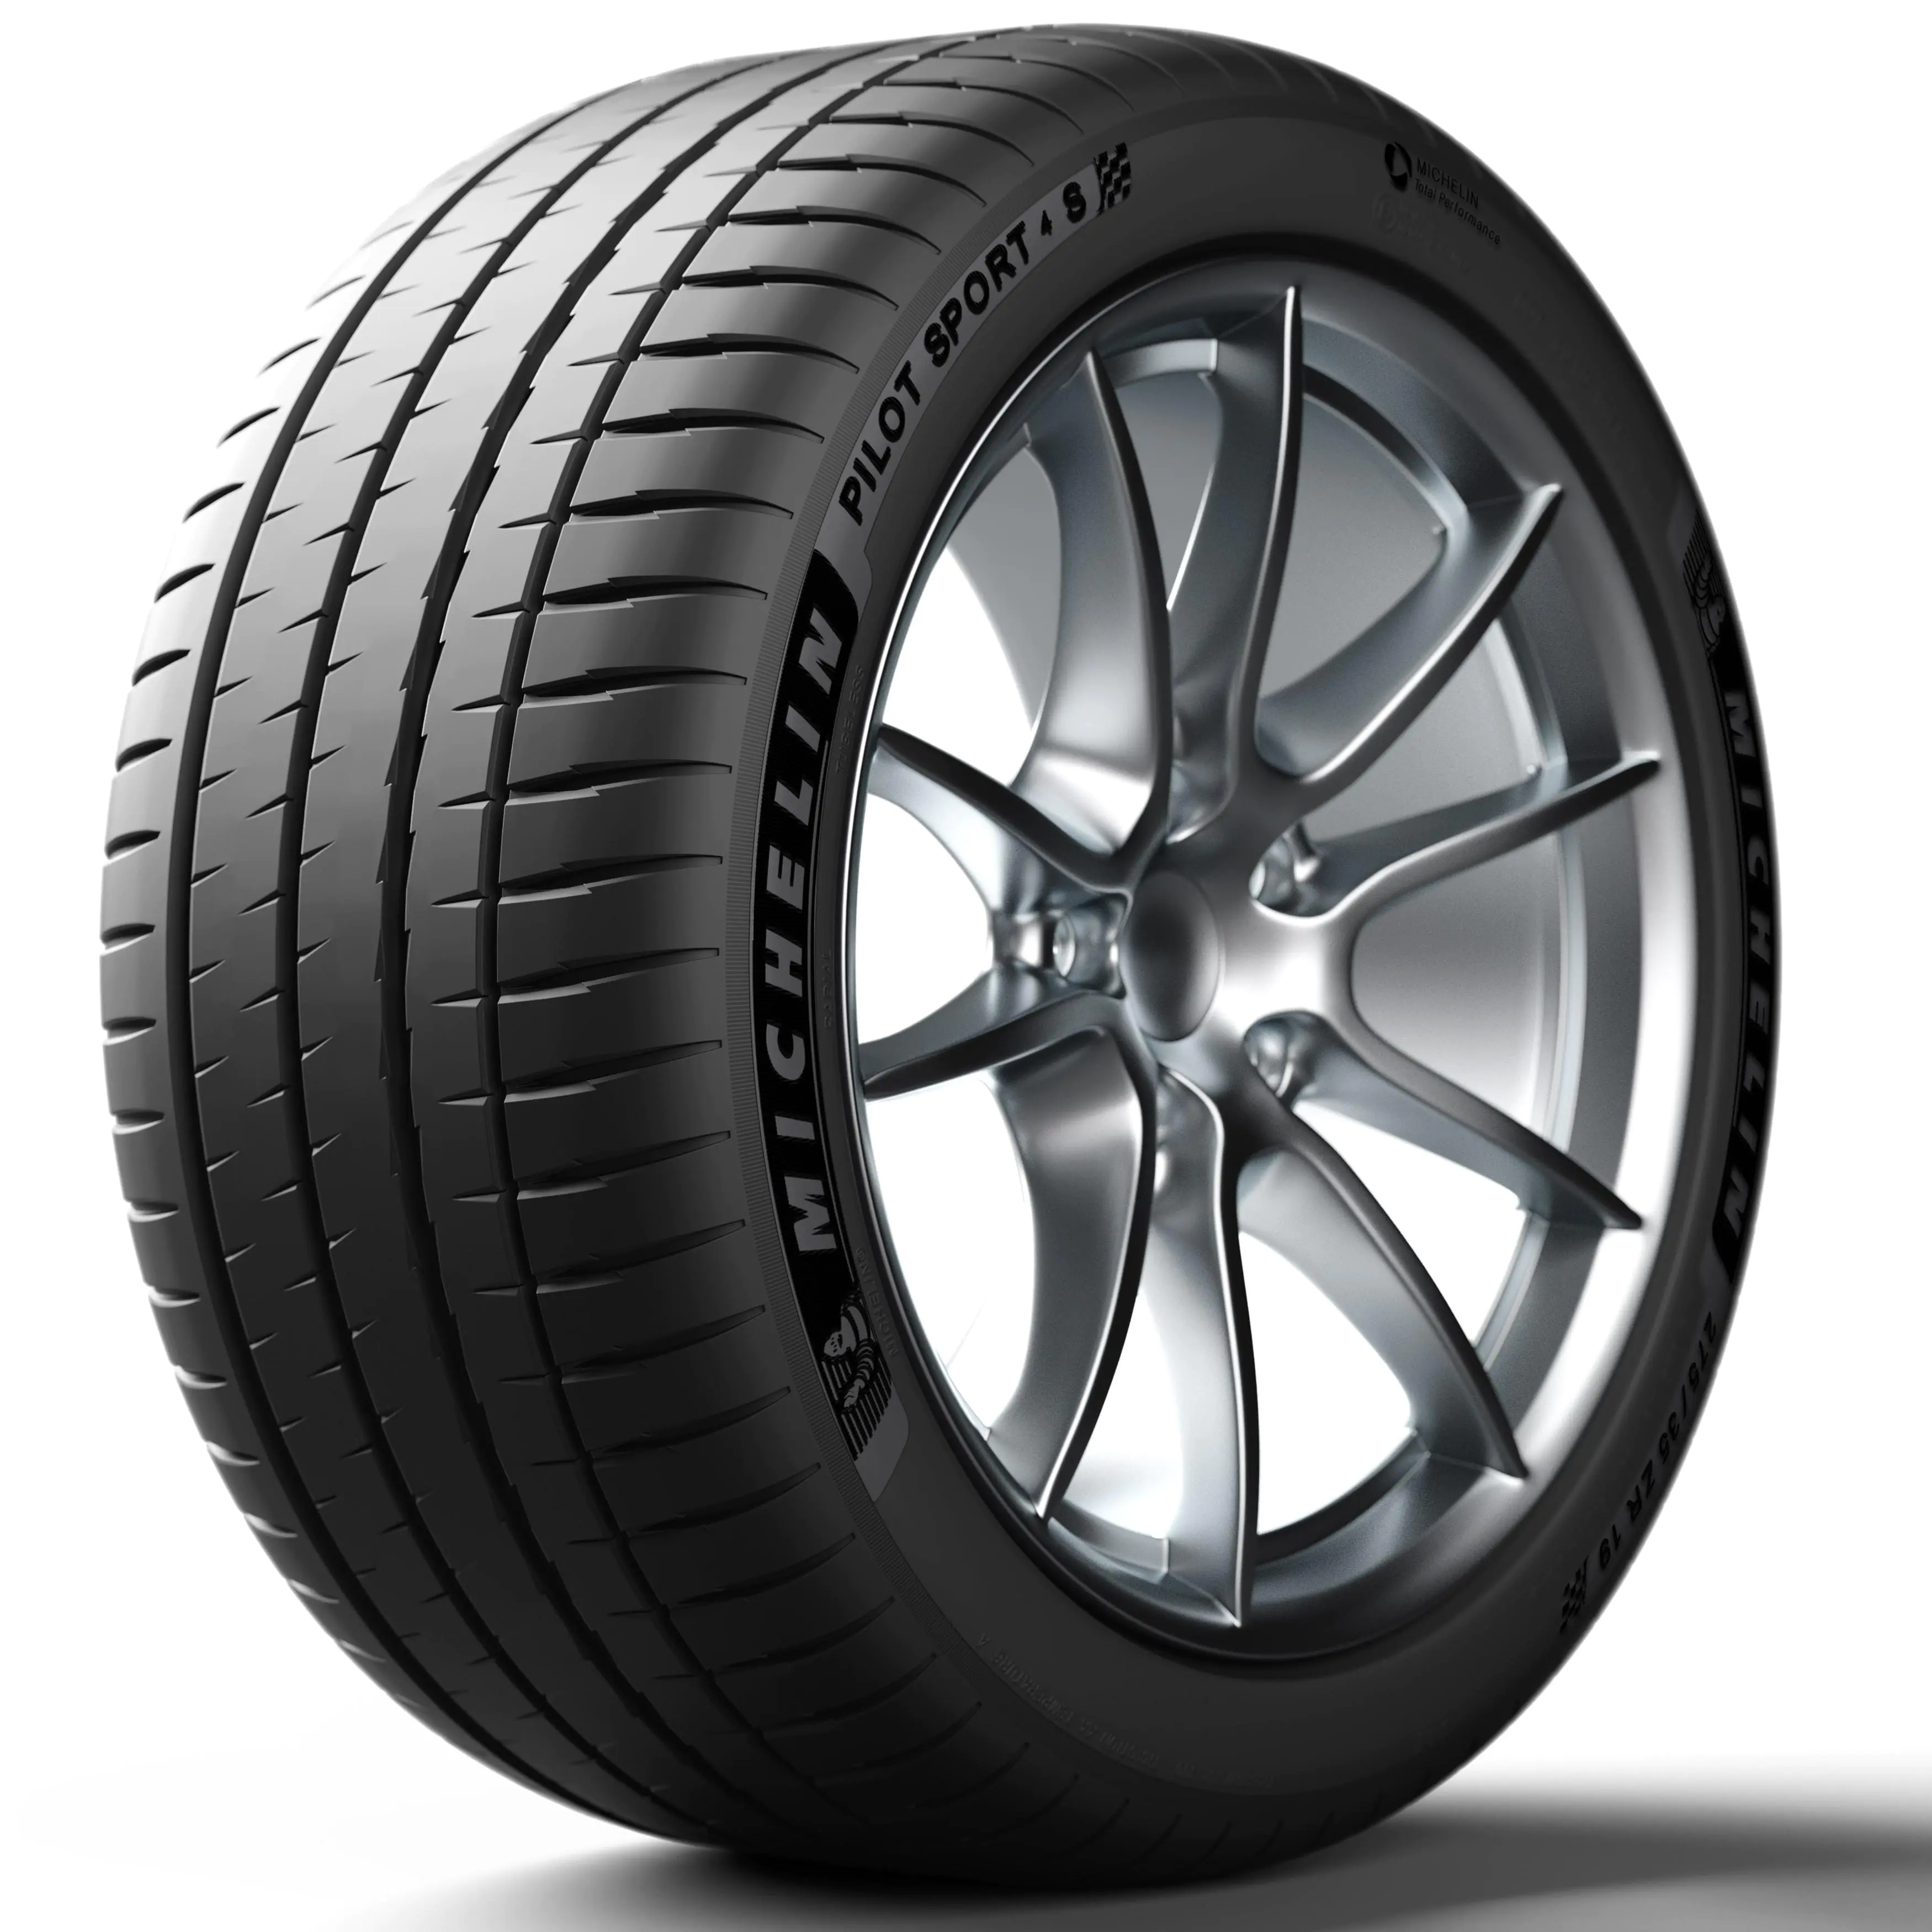 Michelin Michelin 275/35 R18 99Y PILOT SPORT 4 S TPC pneumatici nuovi Estivo 